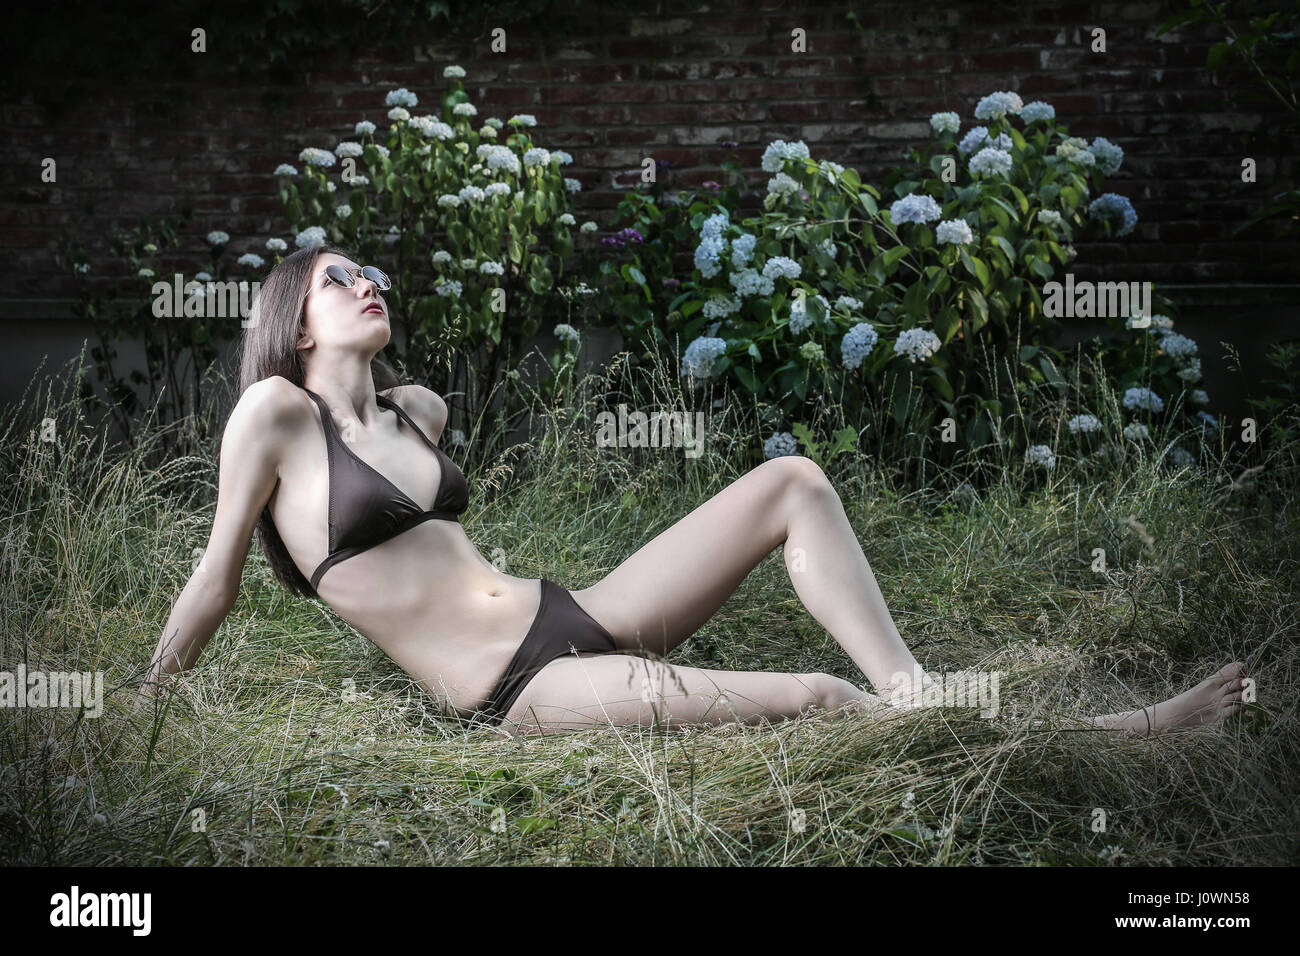 Young woman in bikini laying in garden Stock Photo